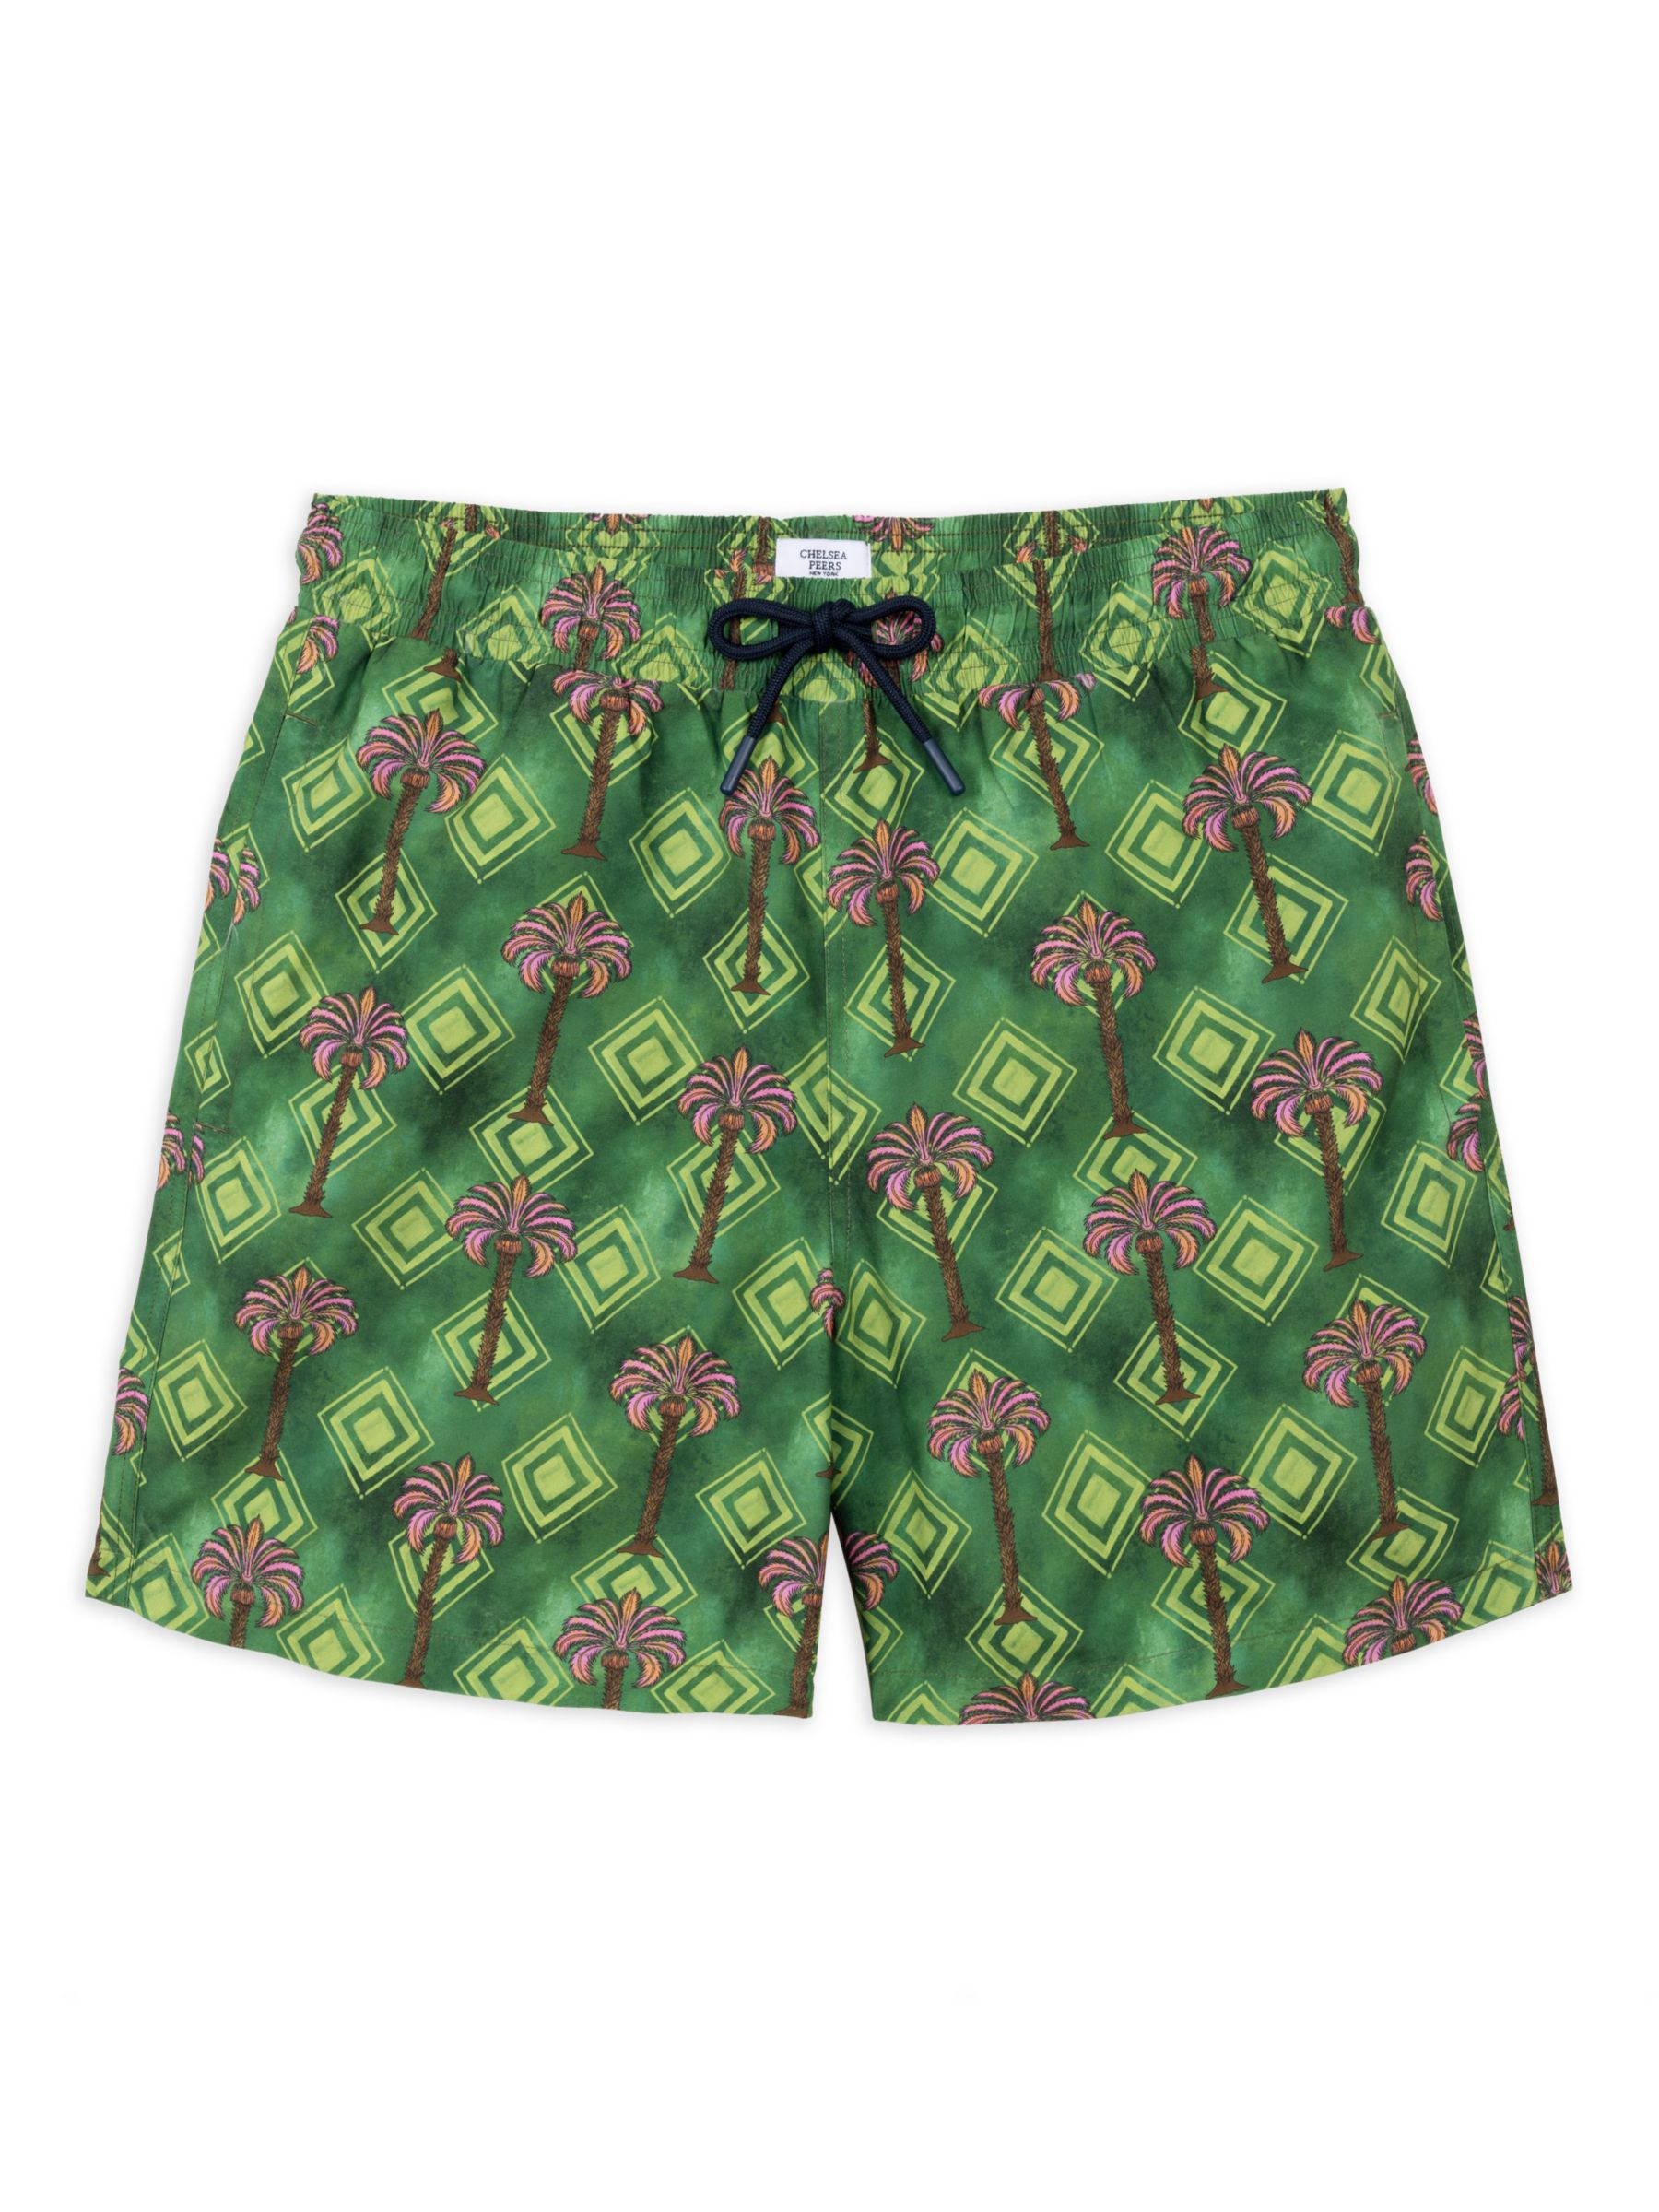 Chelsea Peers Geometric Palm Print Swim Shorts, Khaki/Multi, L